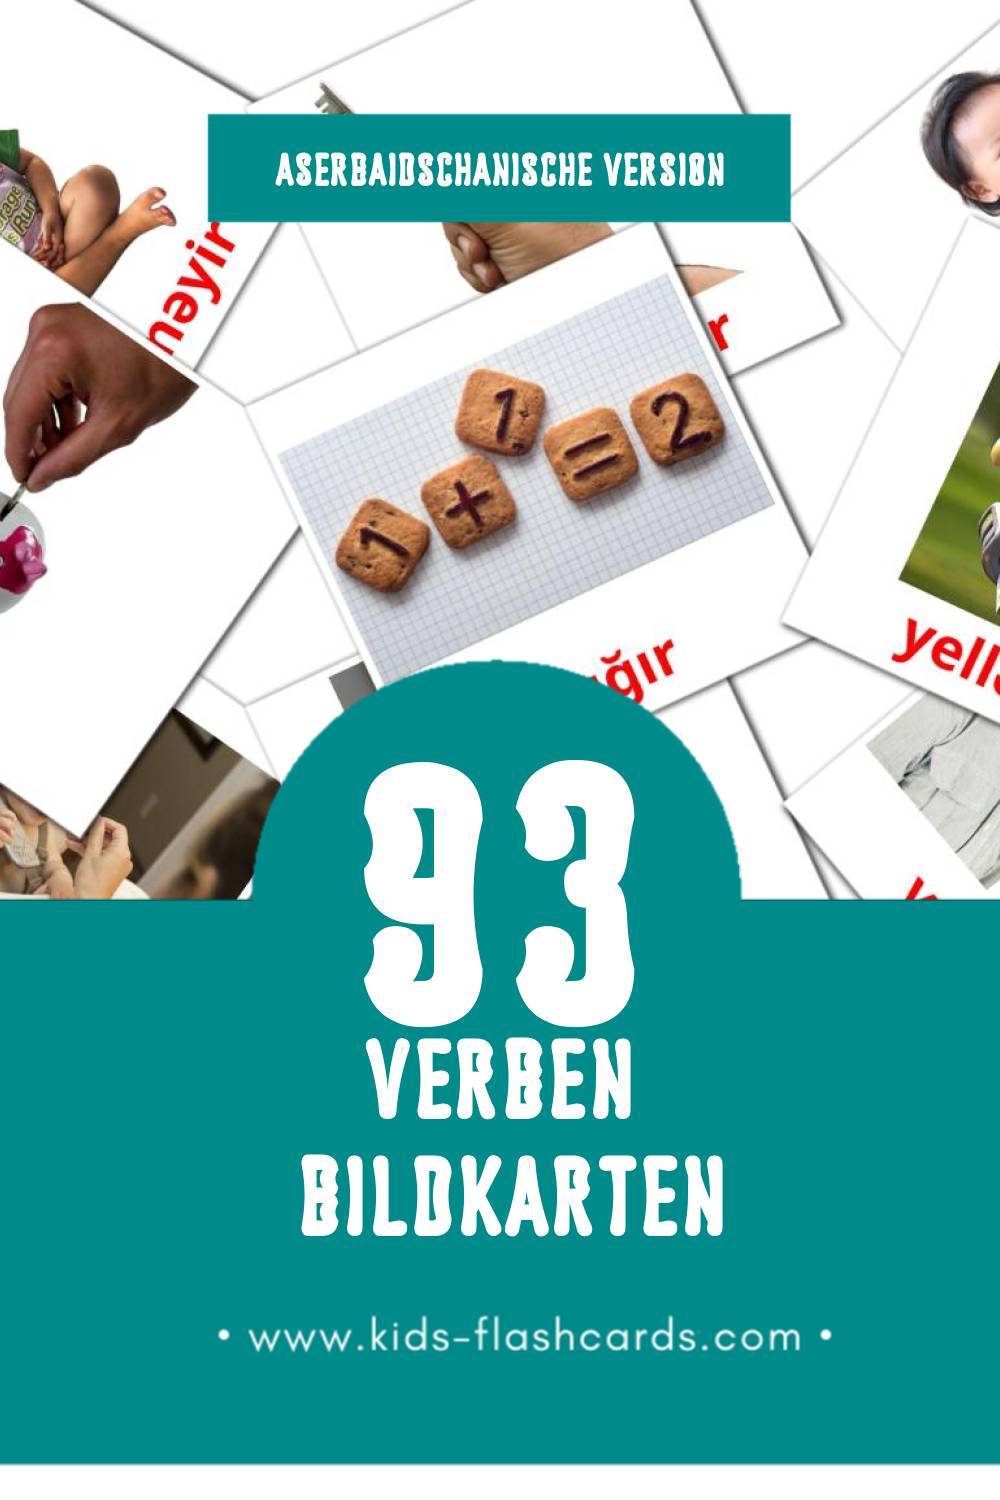 Visual Fellər Flashcards für Kleinkinder (126 Karten in Aserbaidschanisch)